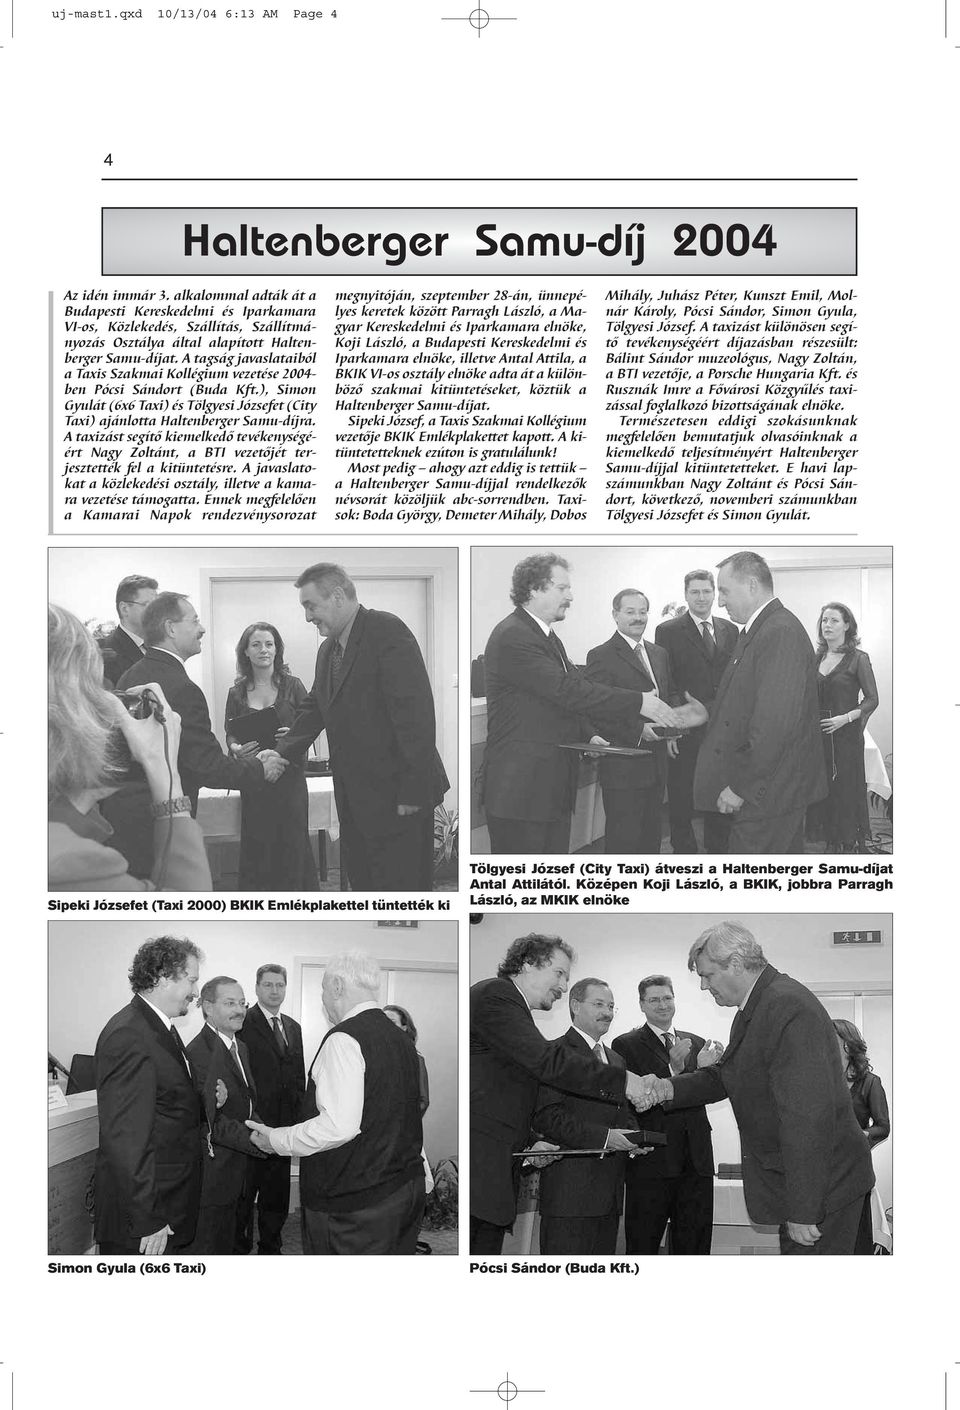 A tagság javaslataiból a Taxis Szakmai Kollégium vezetése 2004- ben Pócsi Sándort (Buda Kft.), Simon Gyulát (6x6 Taxi) és Tölgyesi Józsefet (City Taxi) ajánlotta Haltenberger Samu-díjra.